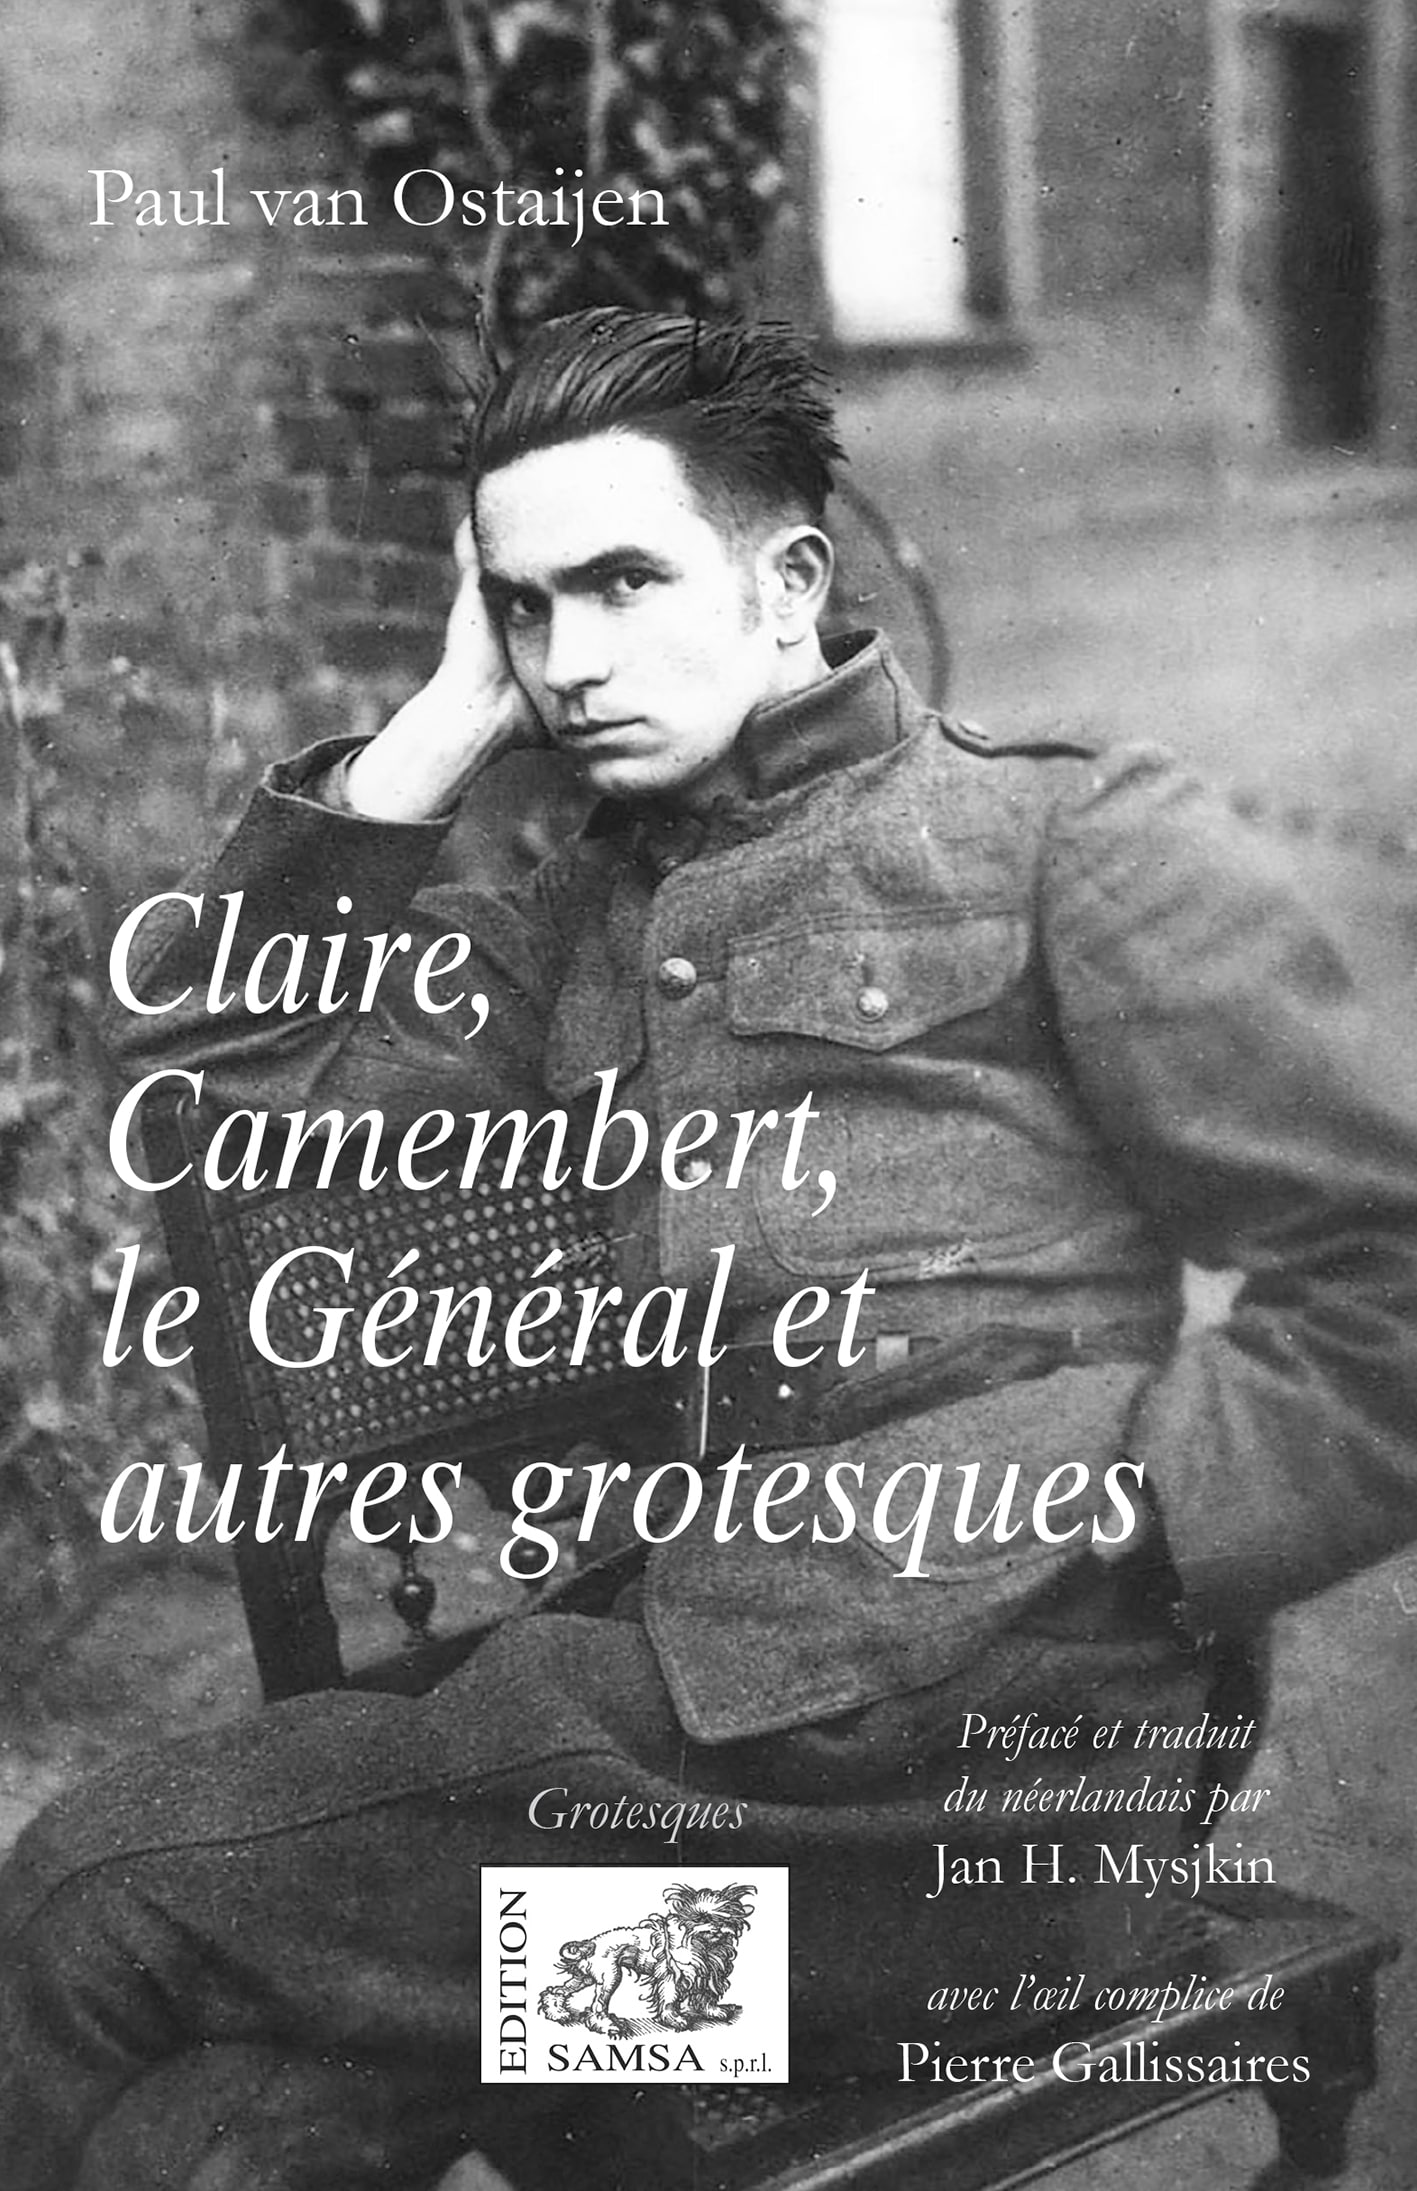 Claire, Camembert, Le Général - grotesques